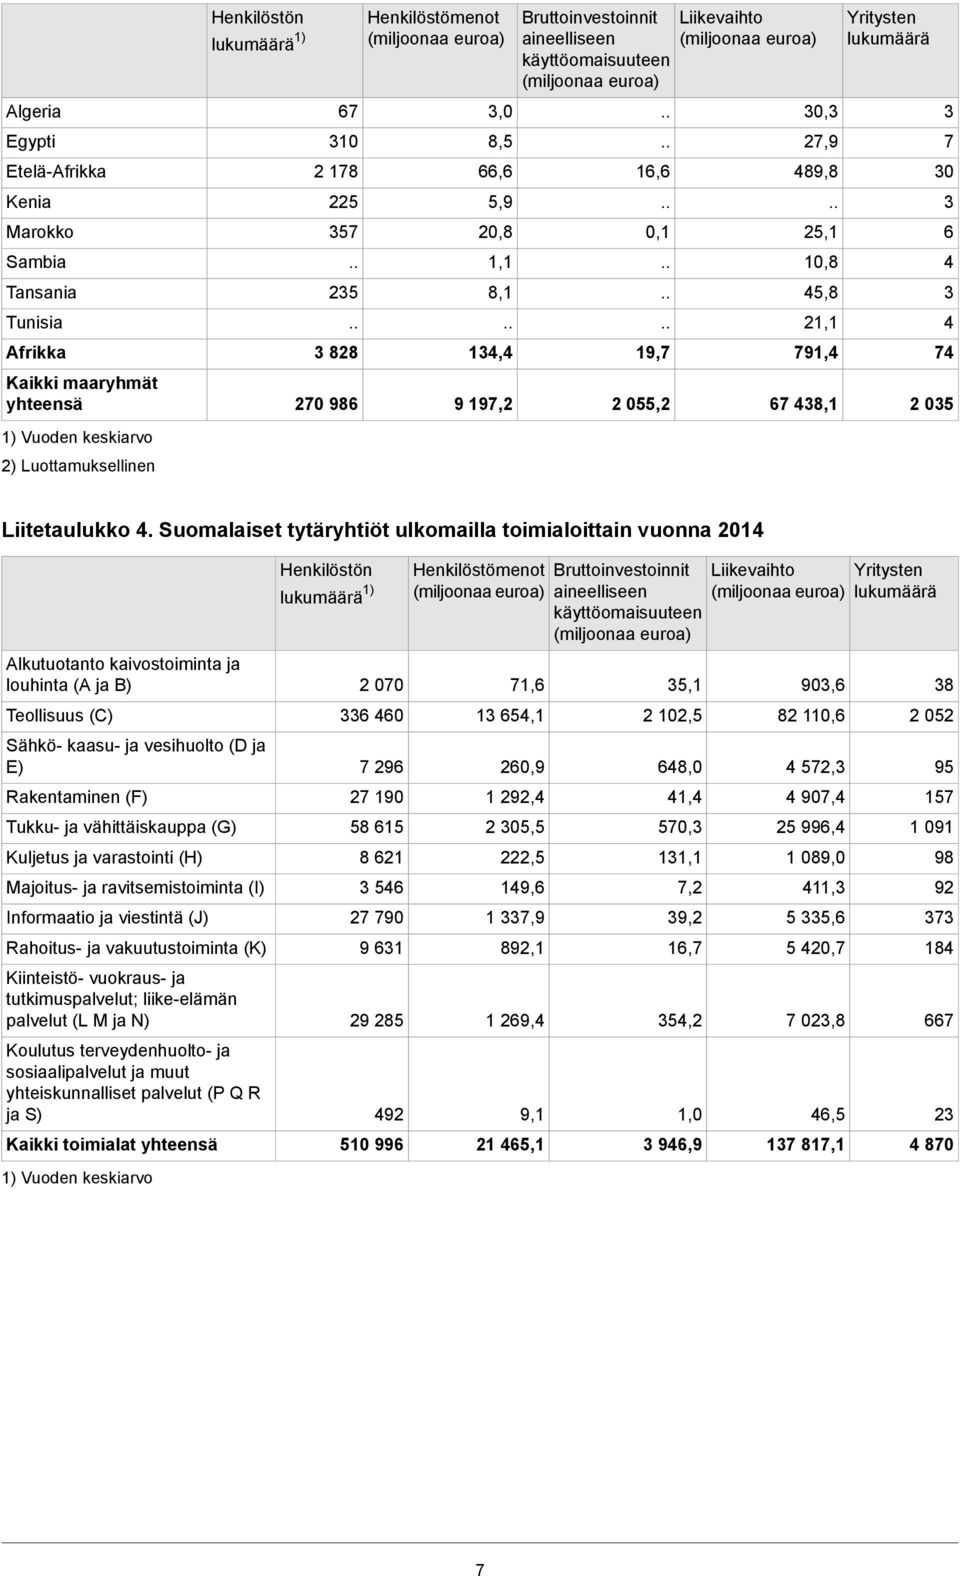 Suomalaiset tytäryhtiöt ulkomailla toimialoittain vuonna 201 Alkutuotanto kaivostoiminta ja louhinta (A ja B) Teollisuus (C) Sähkö- kaasu- ja vesihuolto (D ja E) Rakentaminen (F) Tukku- ja